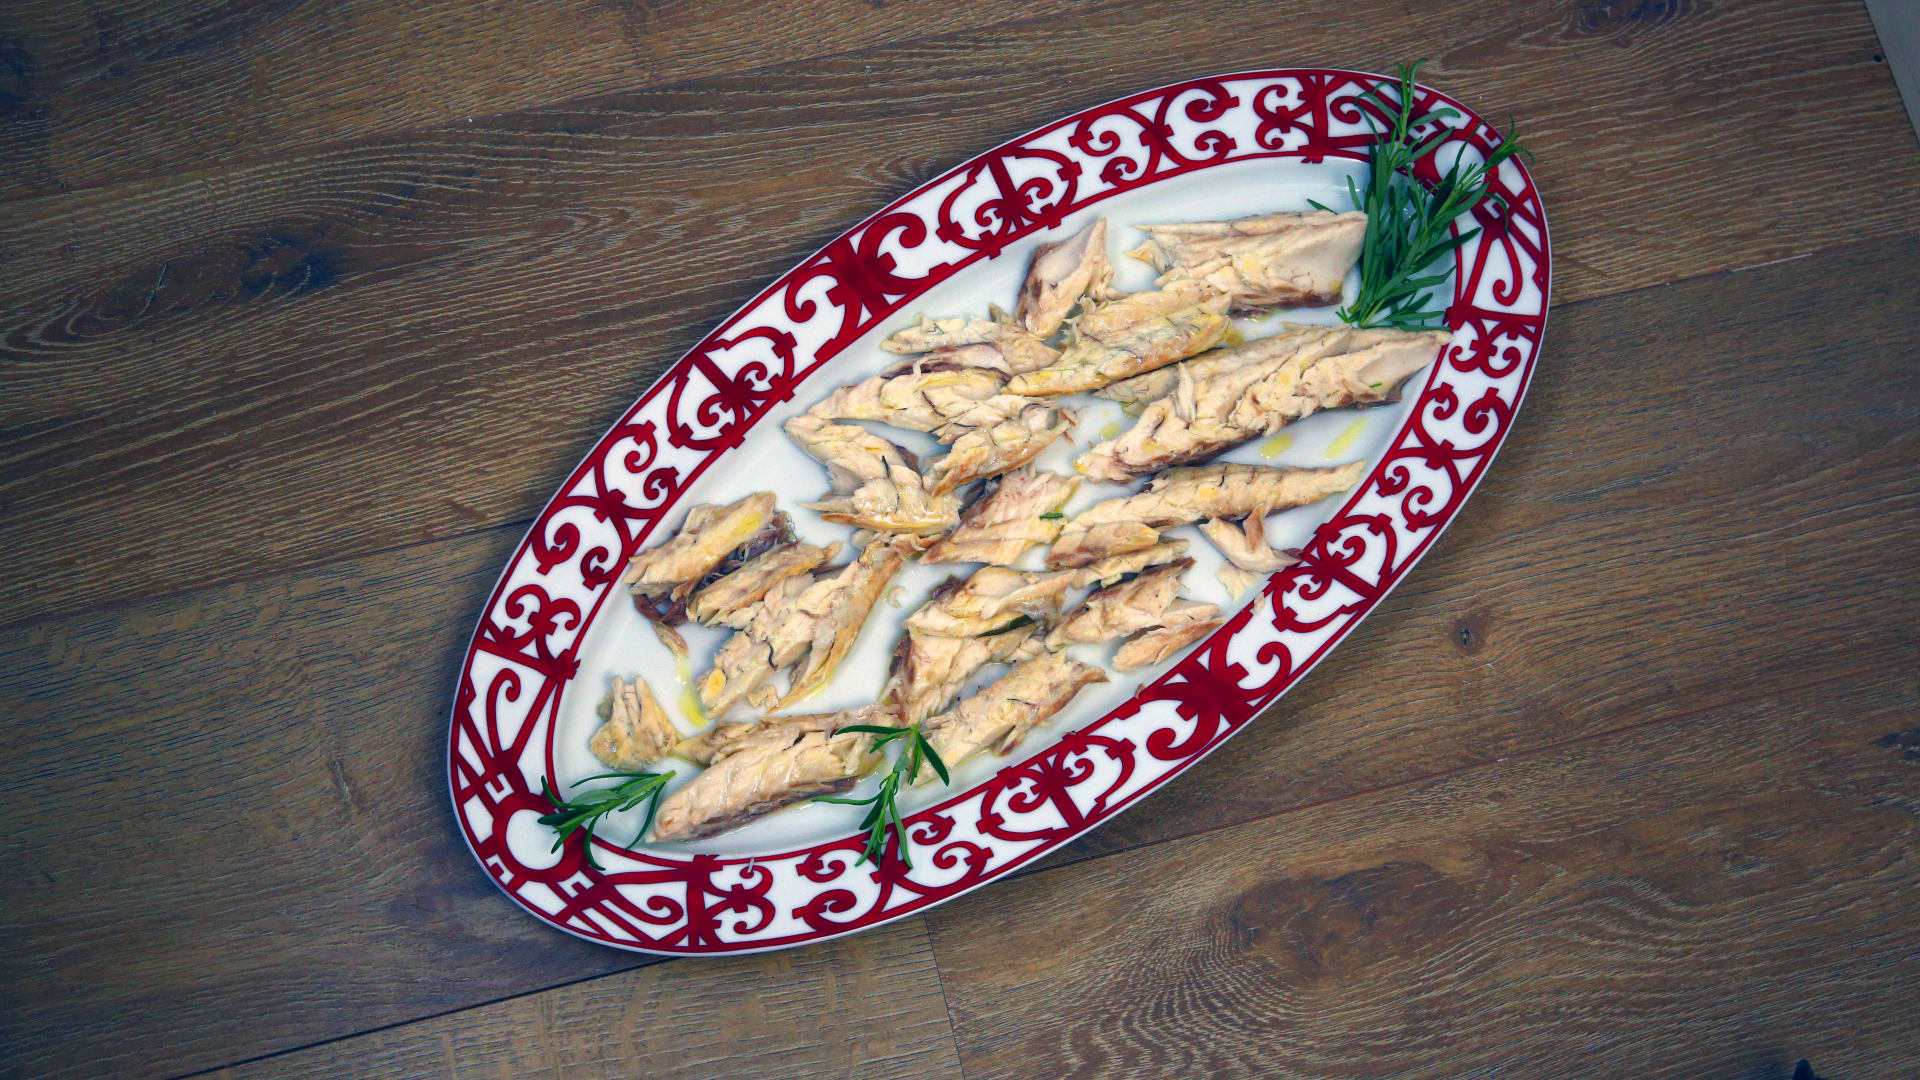 Ryba pečená vsolné krustě, zapečený fenykl